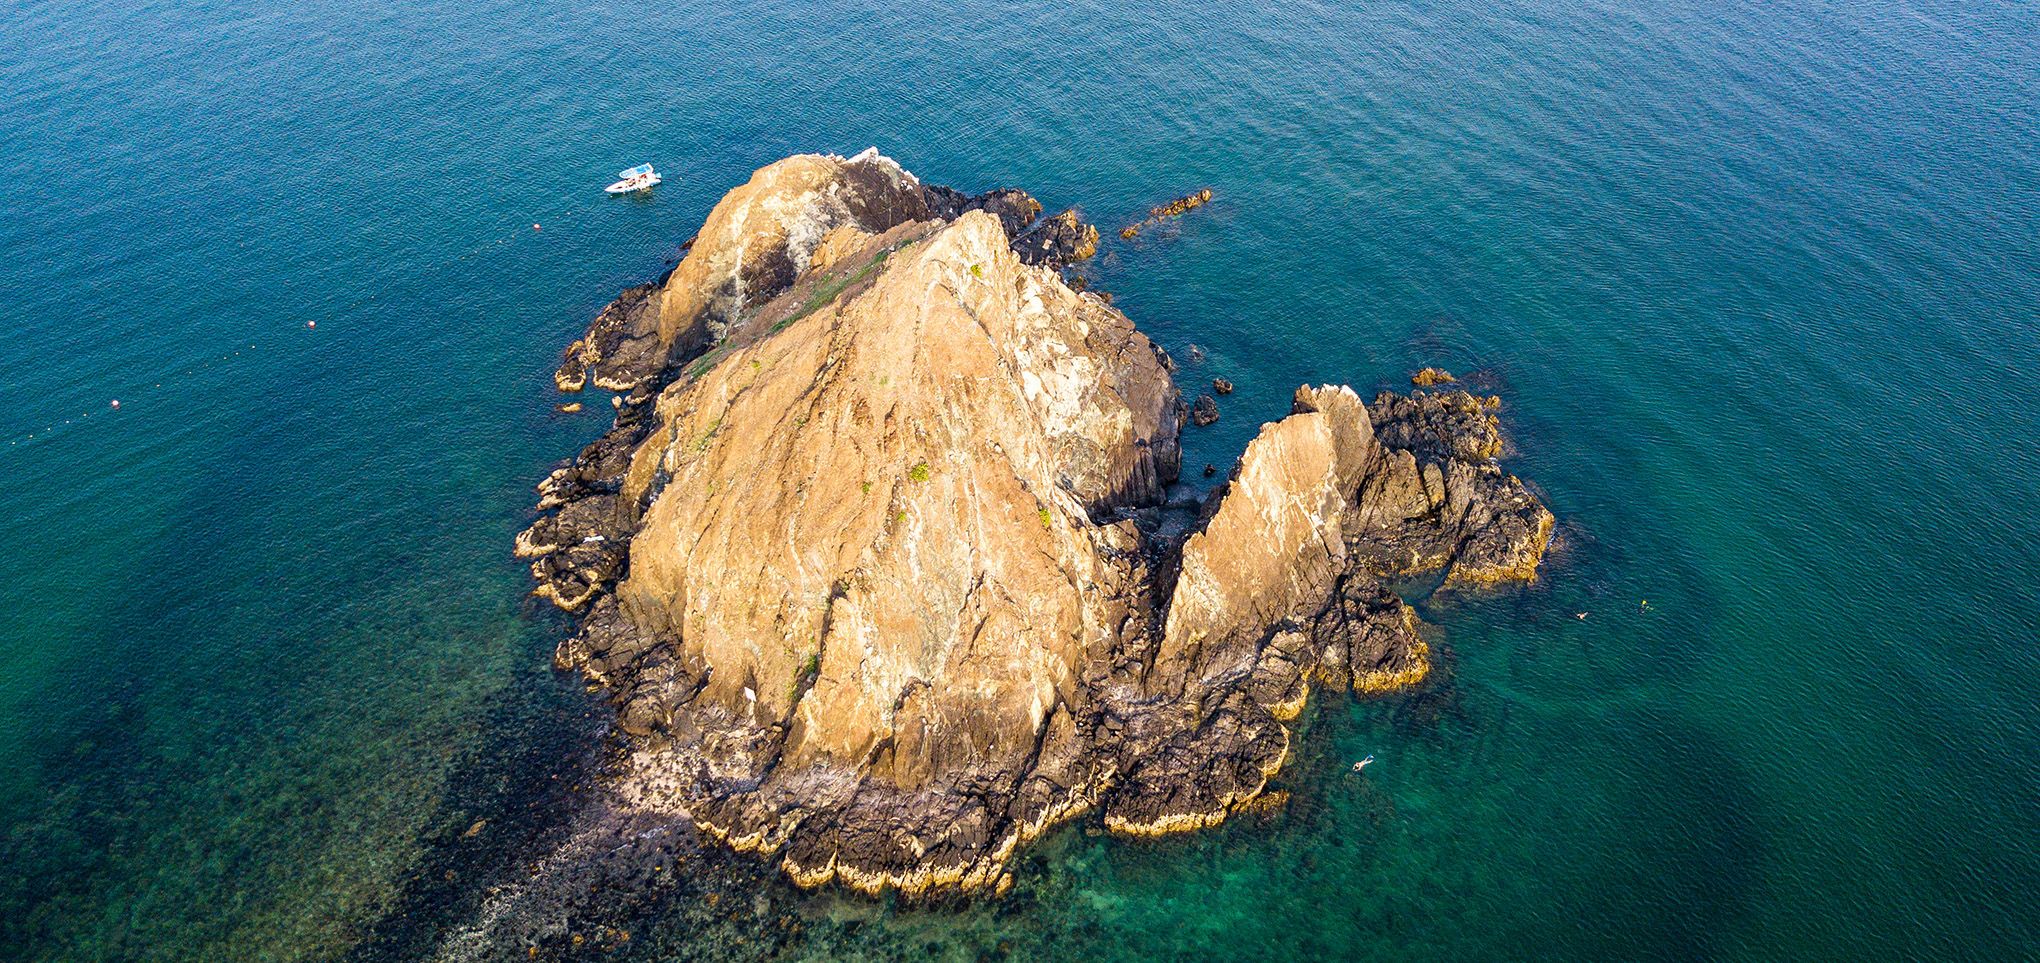 Mit etwas Fantasie kann man in den schroffen Felsen von Snoopy Island, an der Küste vor Al Aqah, Nase, gewölbten Bauch und Schwanz des gleichnamigen Comic-Hundes erkennen